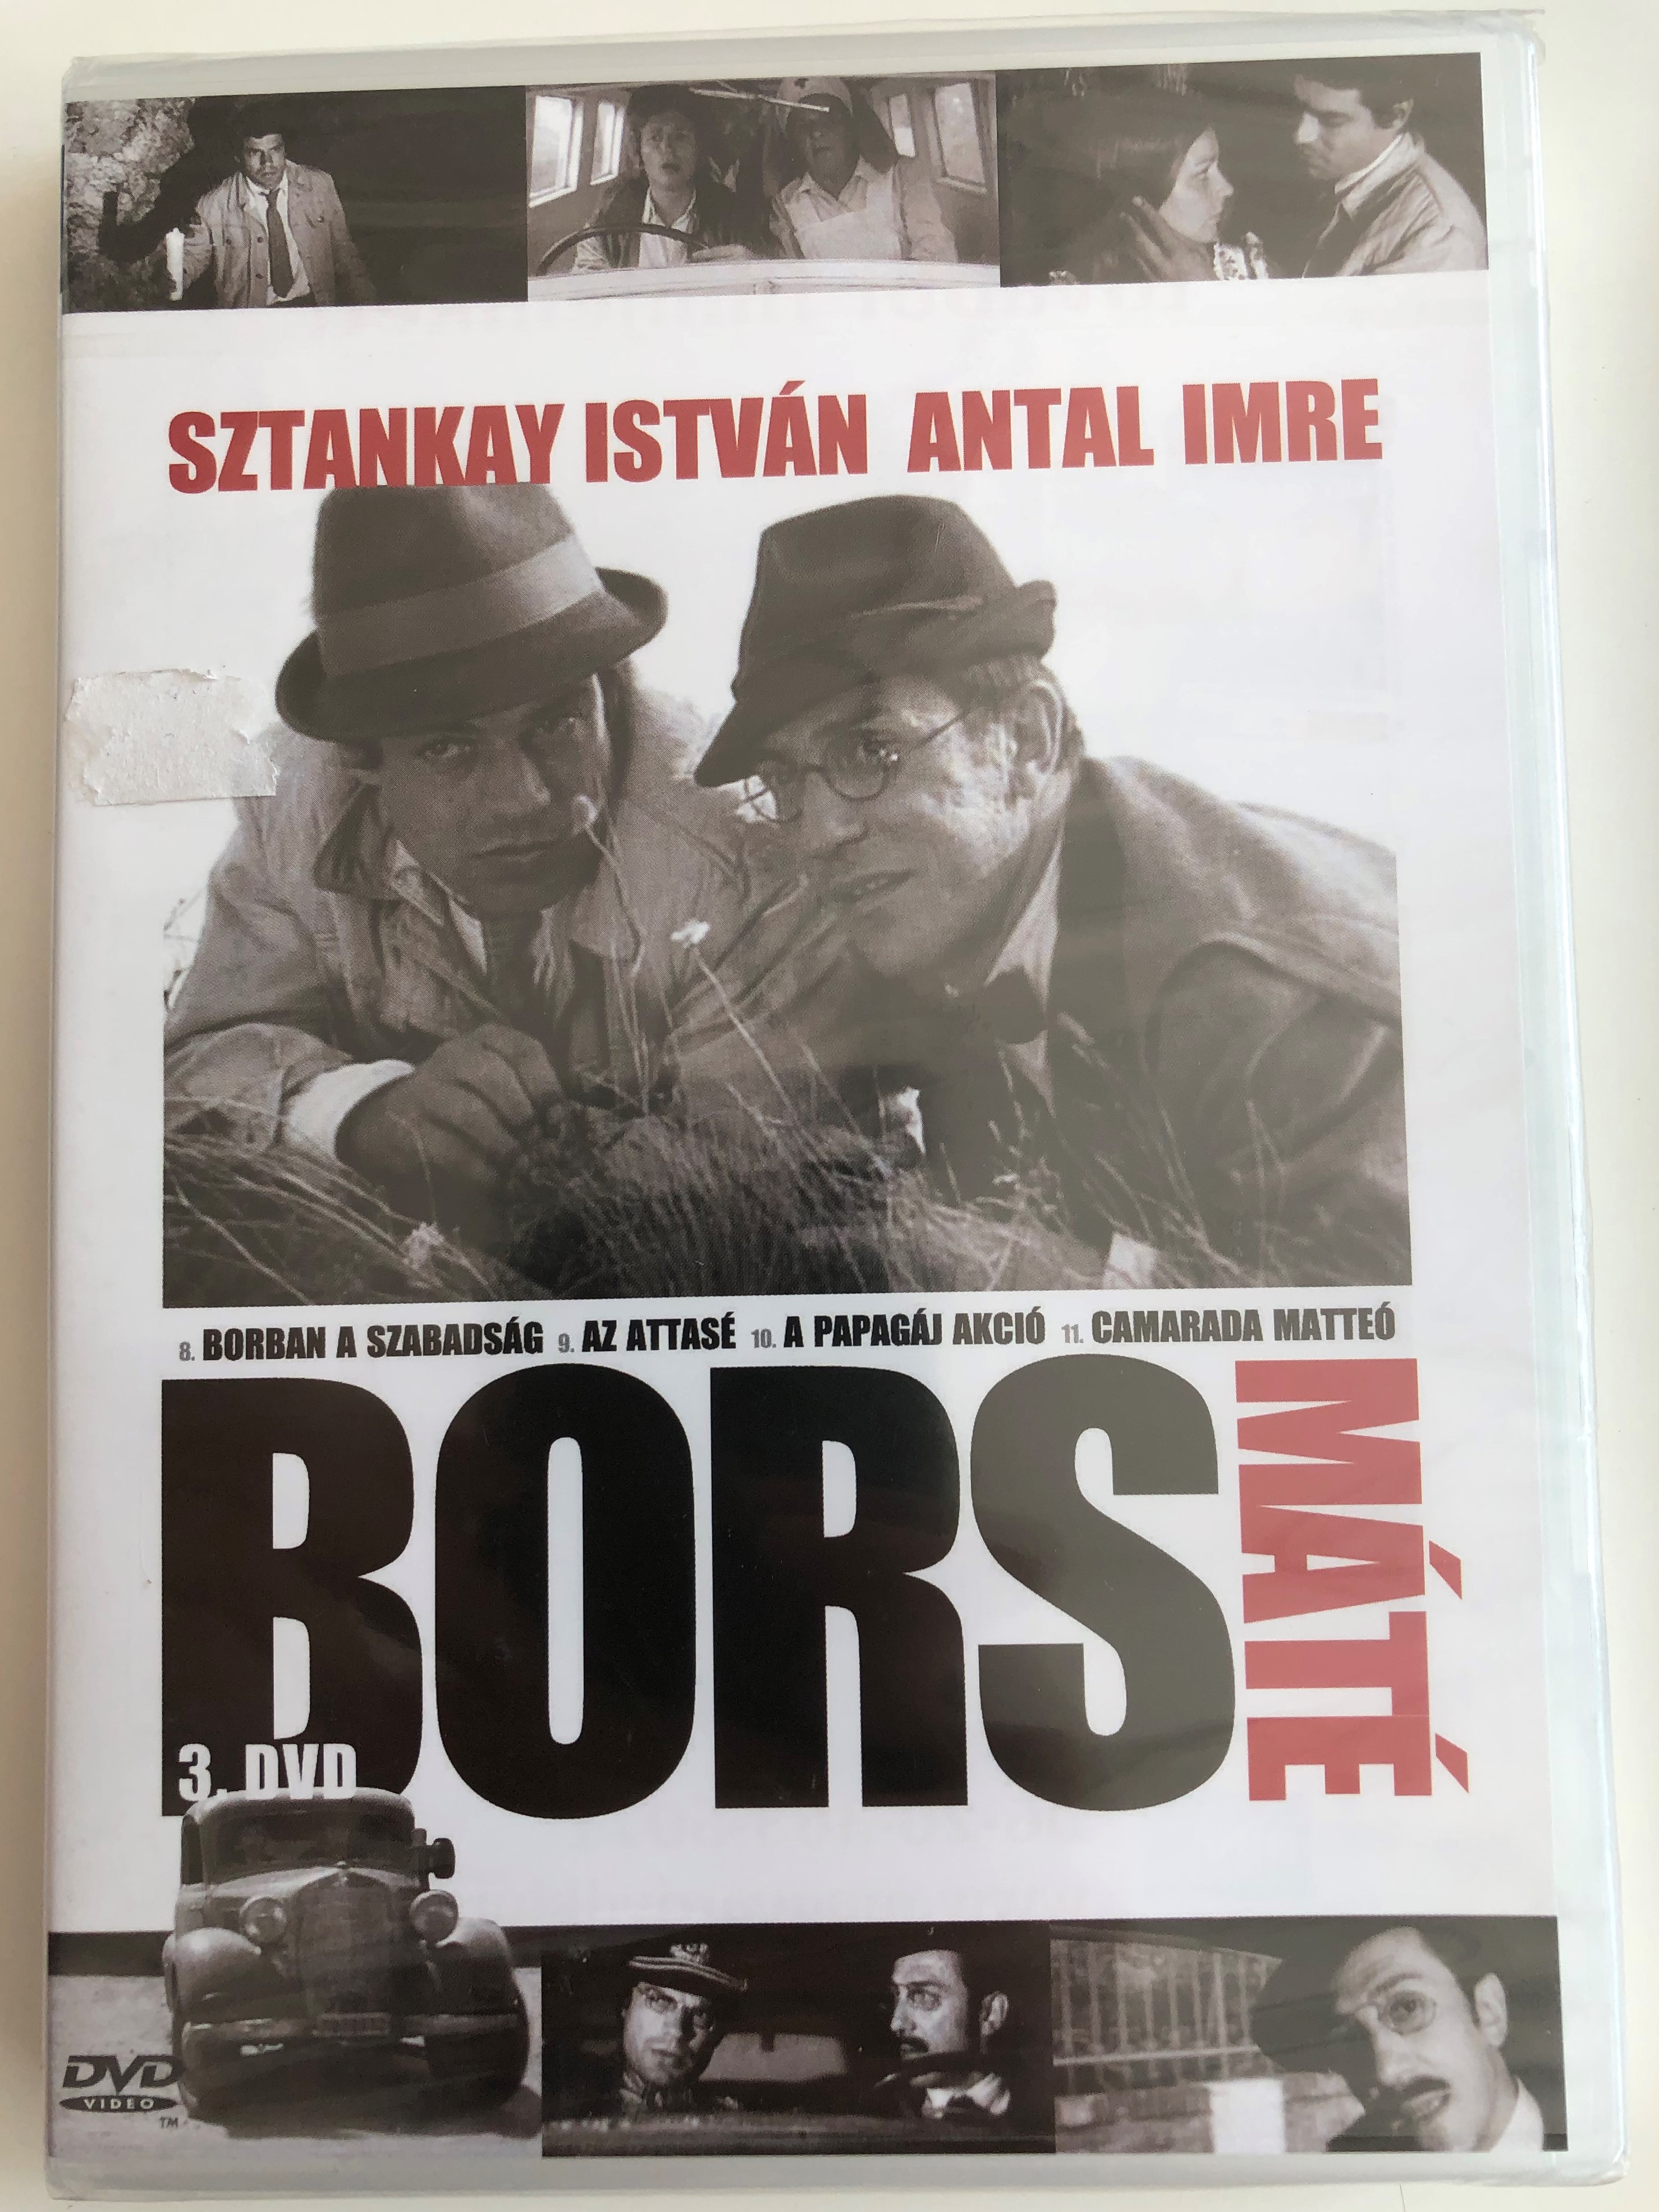 Bors 3. DVD 1968 Bors Máté / Directed by Herskó János / Sztankay István,  Antal Imre, Rajz János, Madaras József / Hungarian TV Series / Episodes  8-11 - Bible in My Language